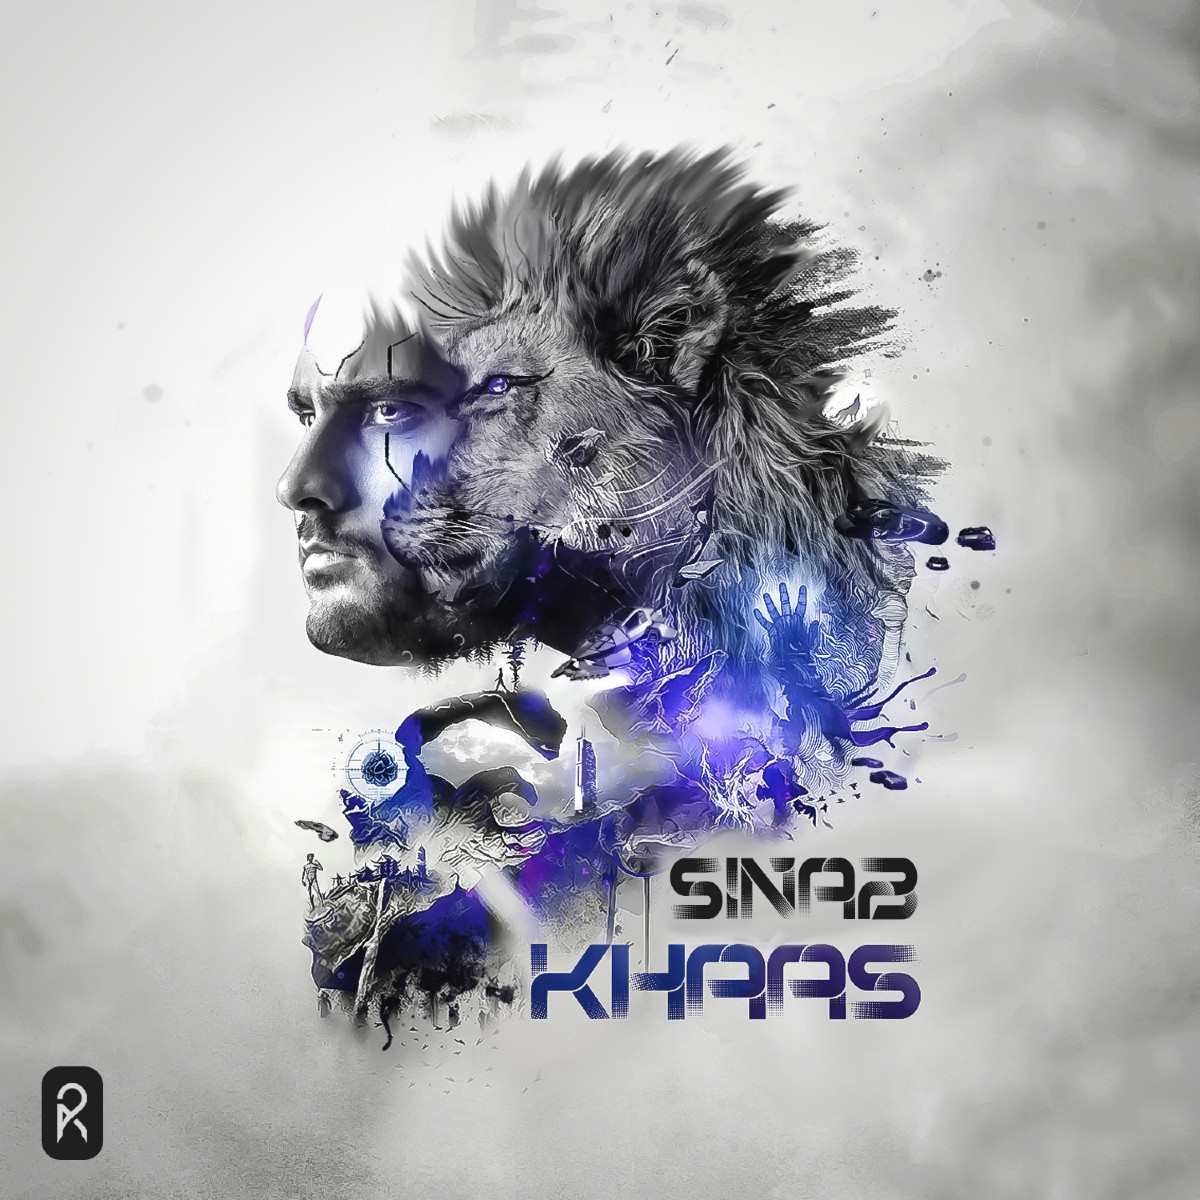 Sinab - Khaas Album